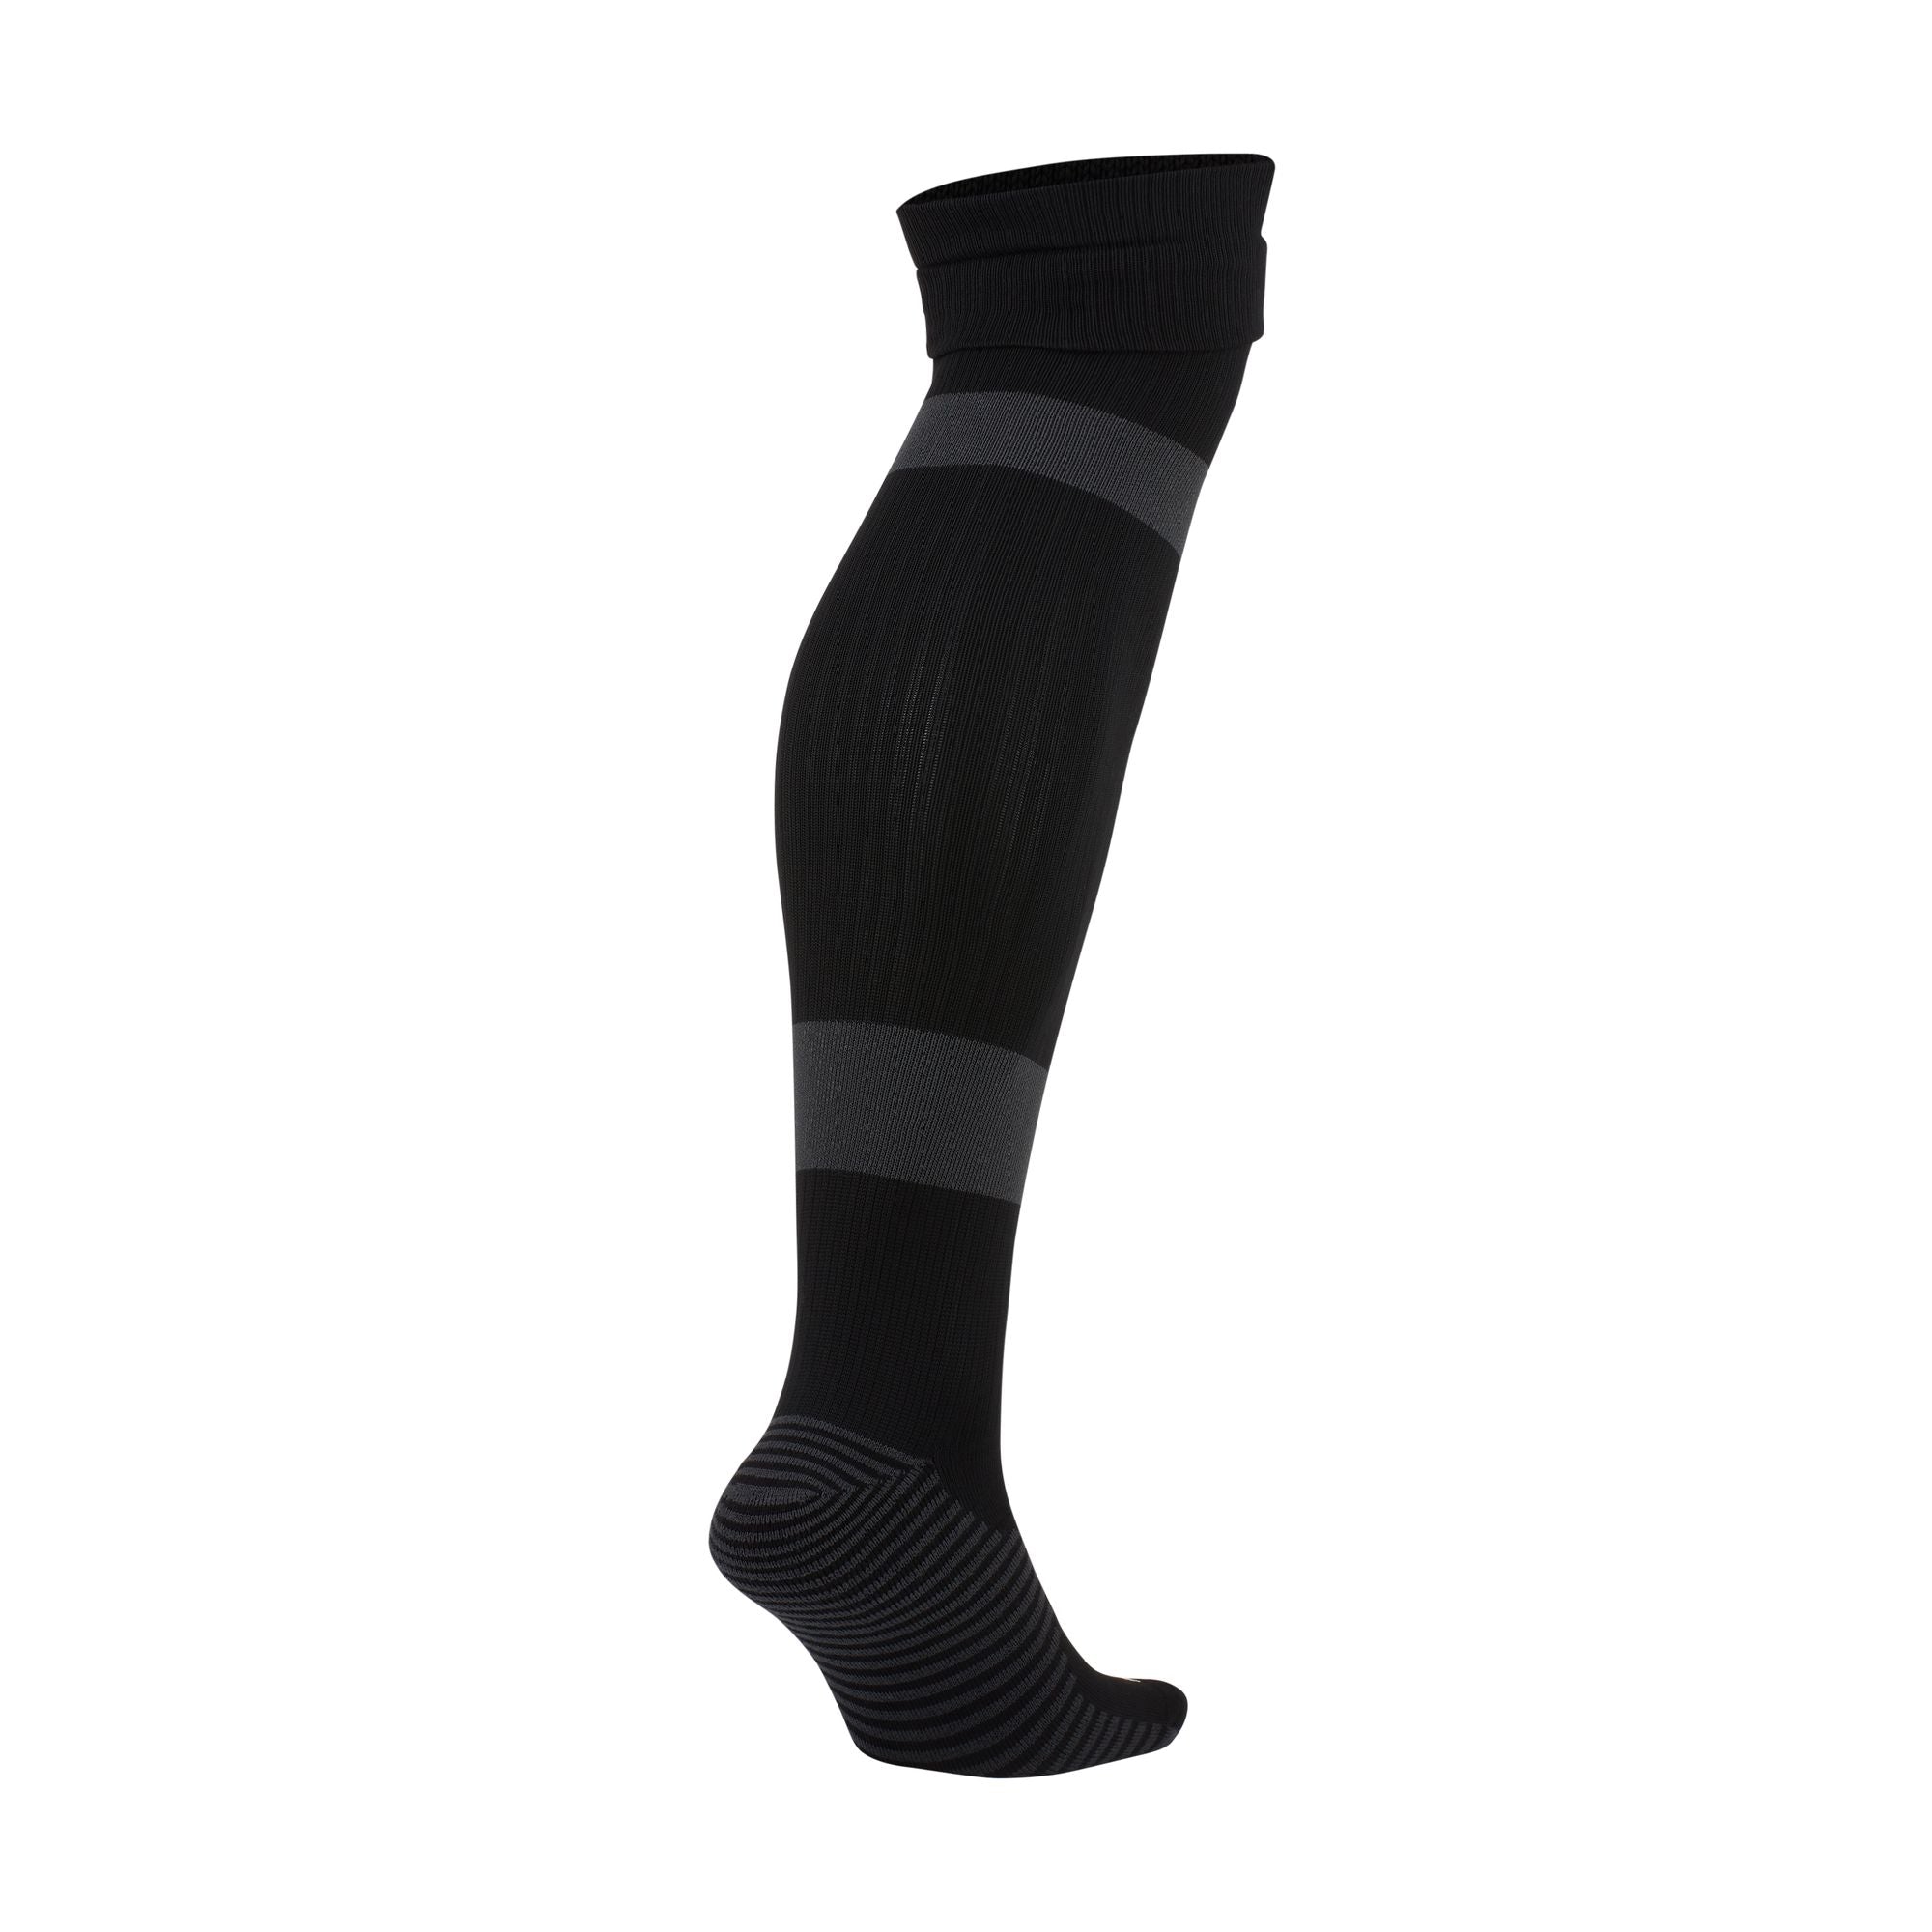 Nike Matchfit Soccer Knee-High Socks